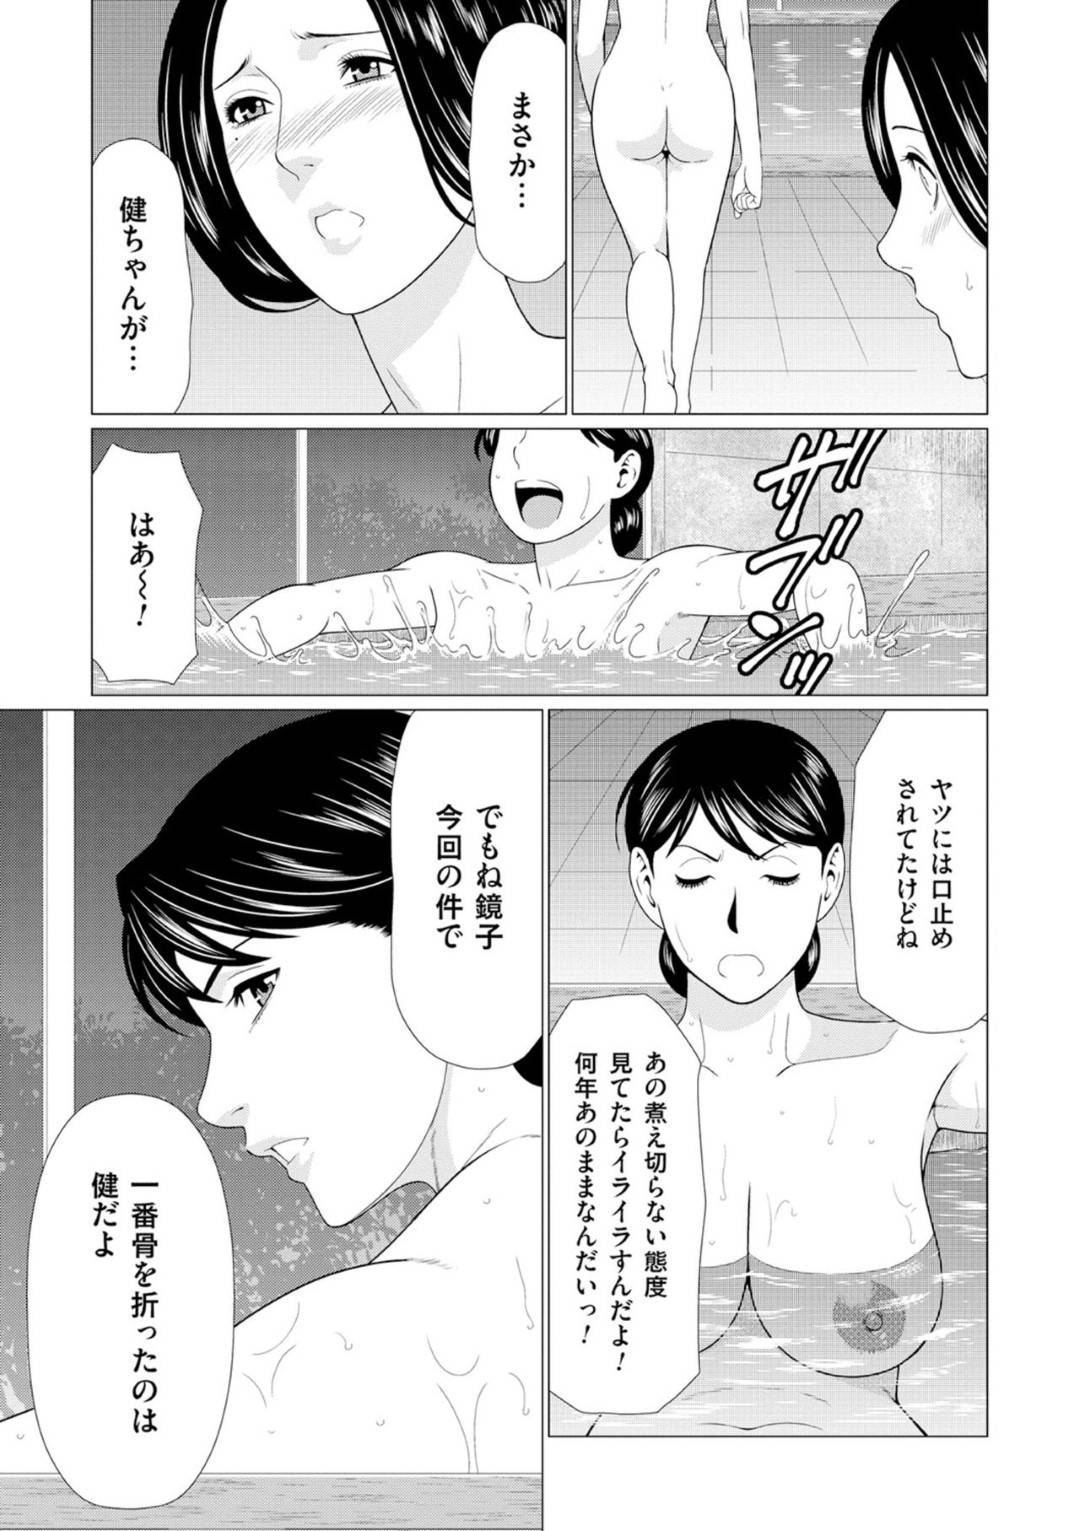 【エロ漫画】真ノ倉姉妹と義姉・美津子との関係は修復された。鏡子は婿さがしをあきらめ、旅館を美津子に託そうとするが、美津子のはからいで鏡子を本当に想う相手に気付かされるのであった